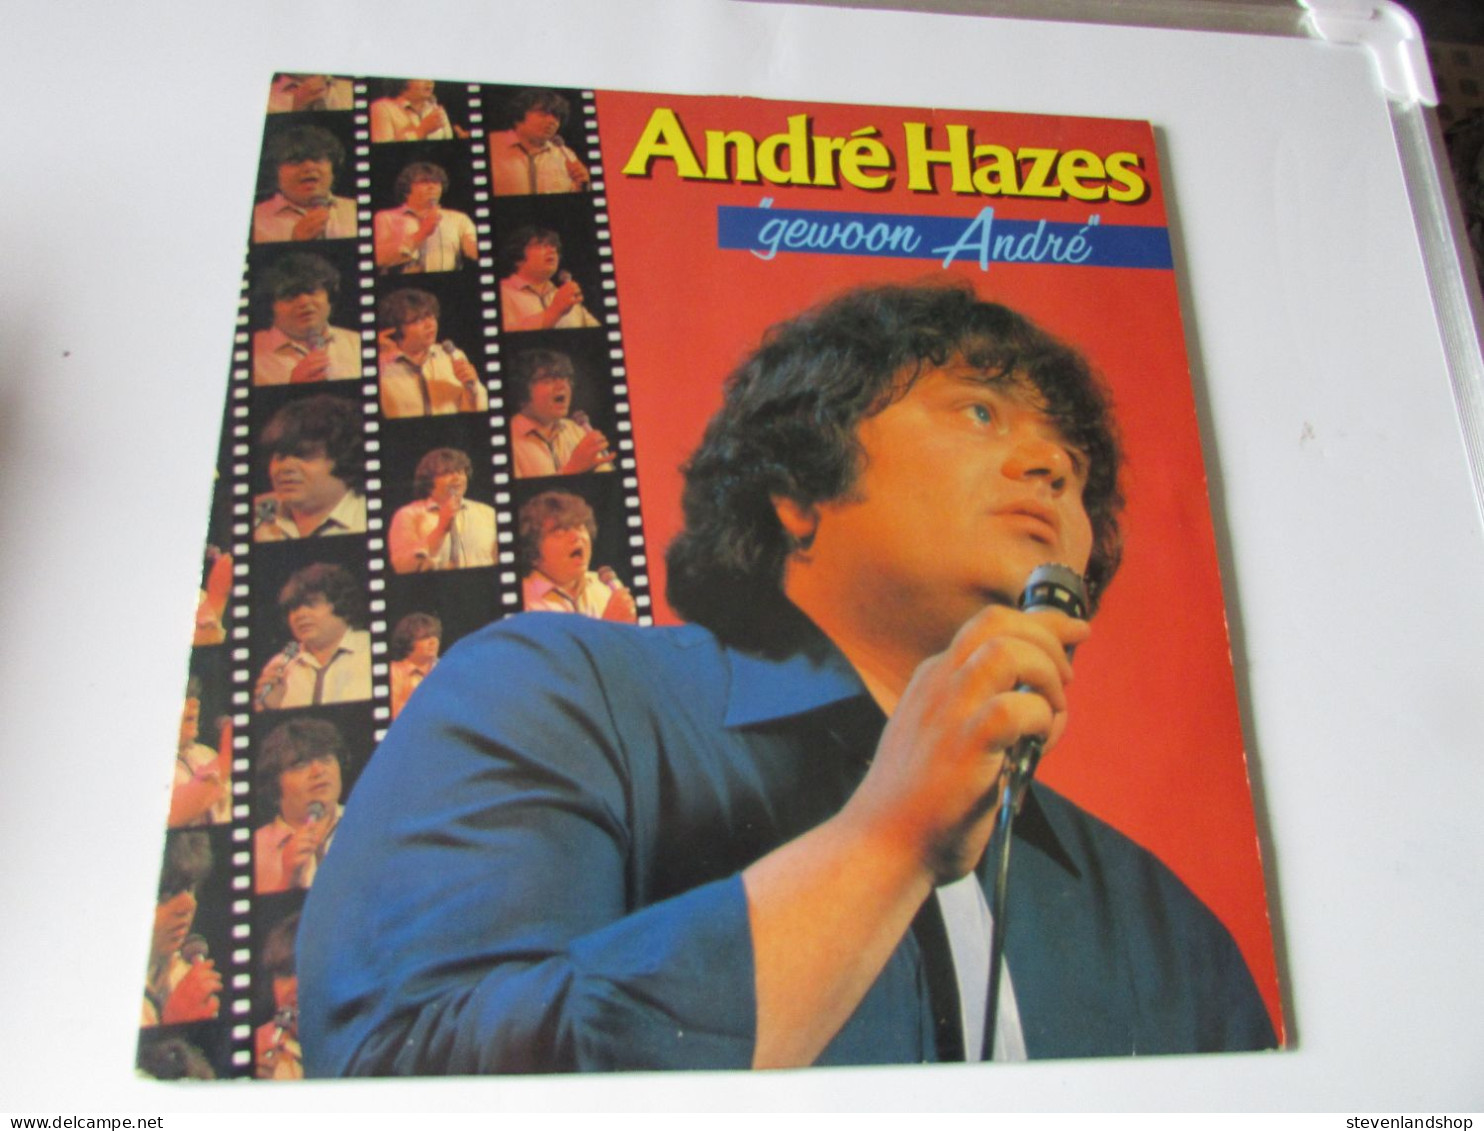 André Hazes, Gewoon André: Lp - Other - Dutch Music